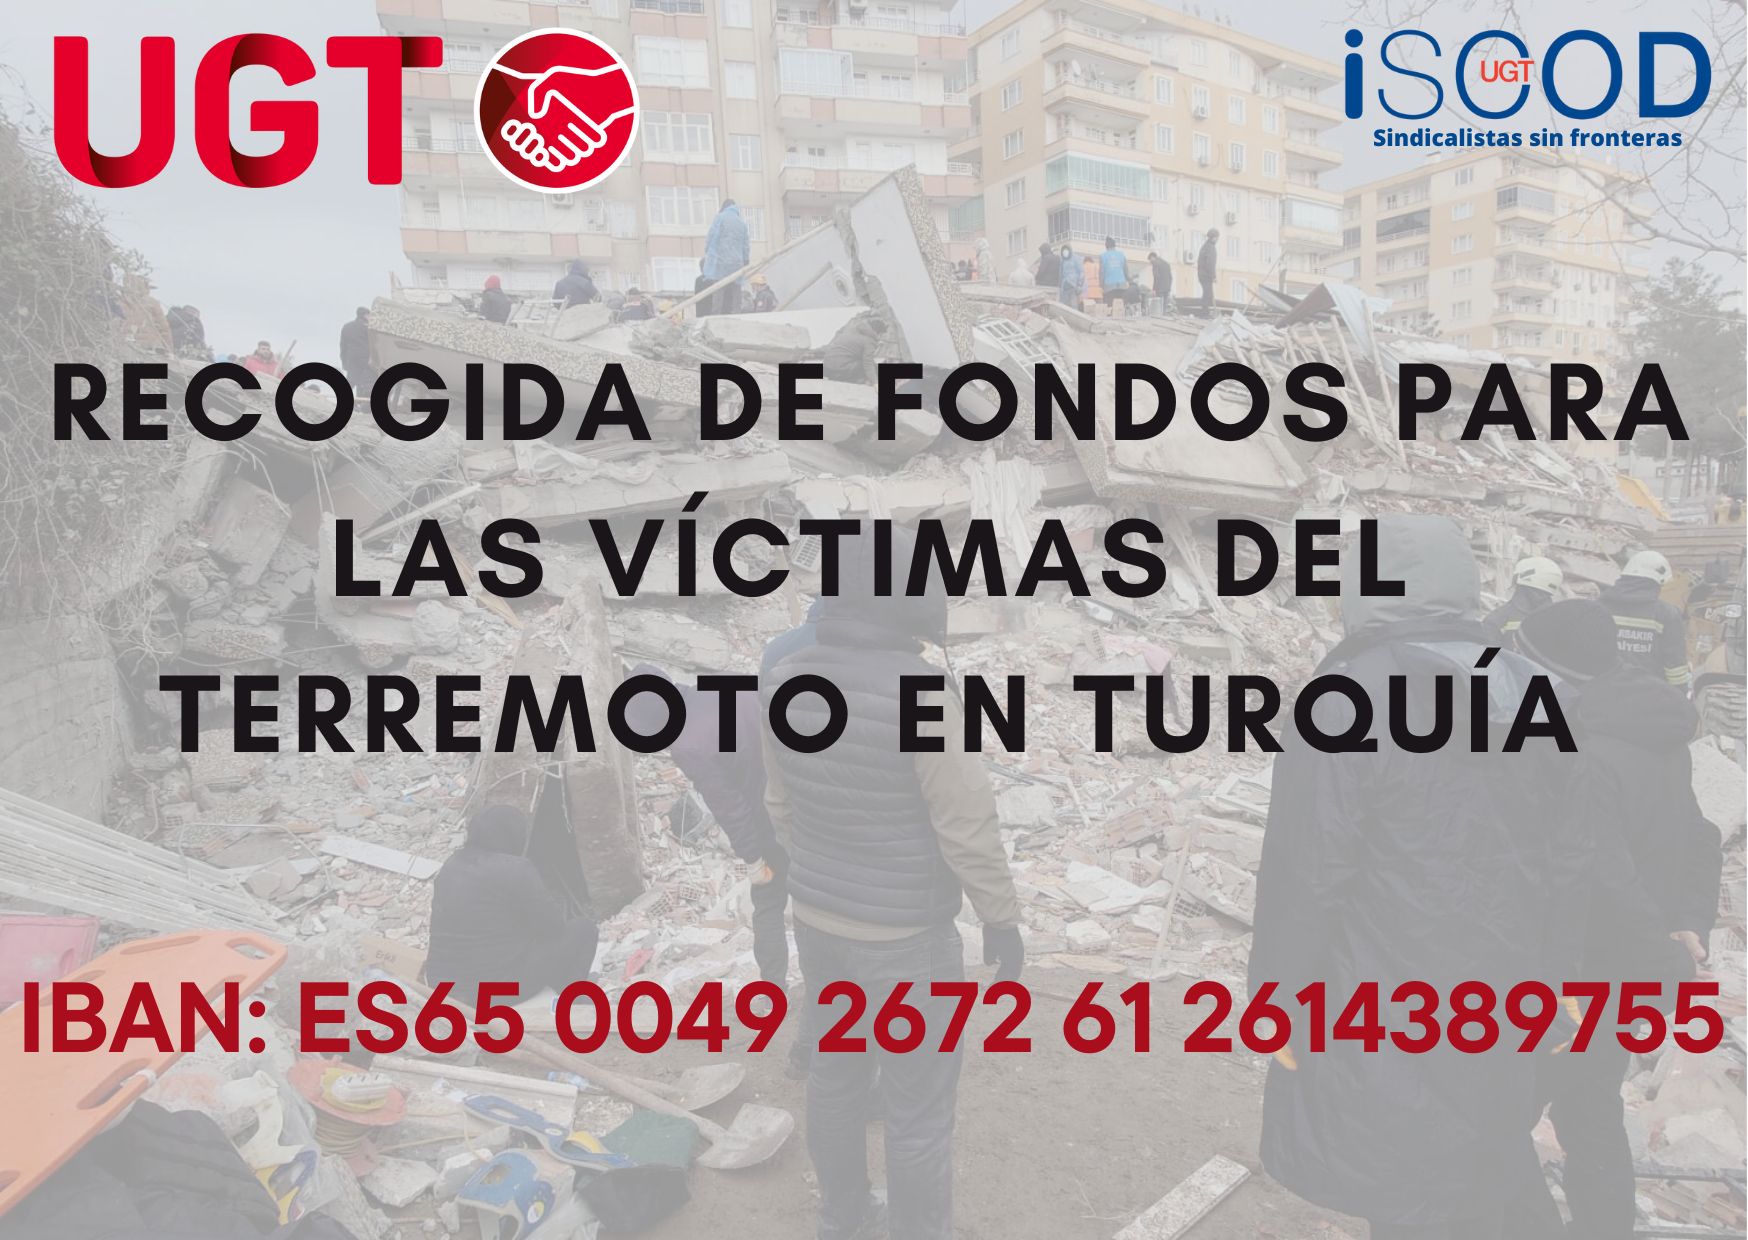 Llamamiento a la solidaridad con las víctimas del terremoto enTurquía